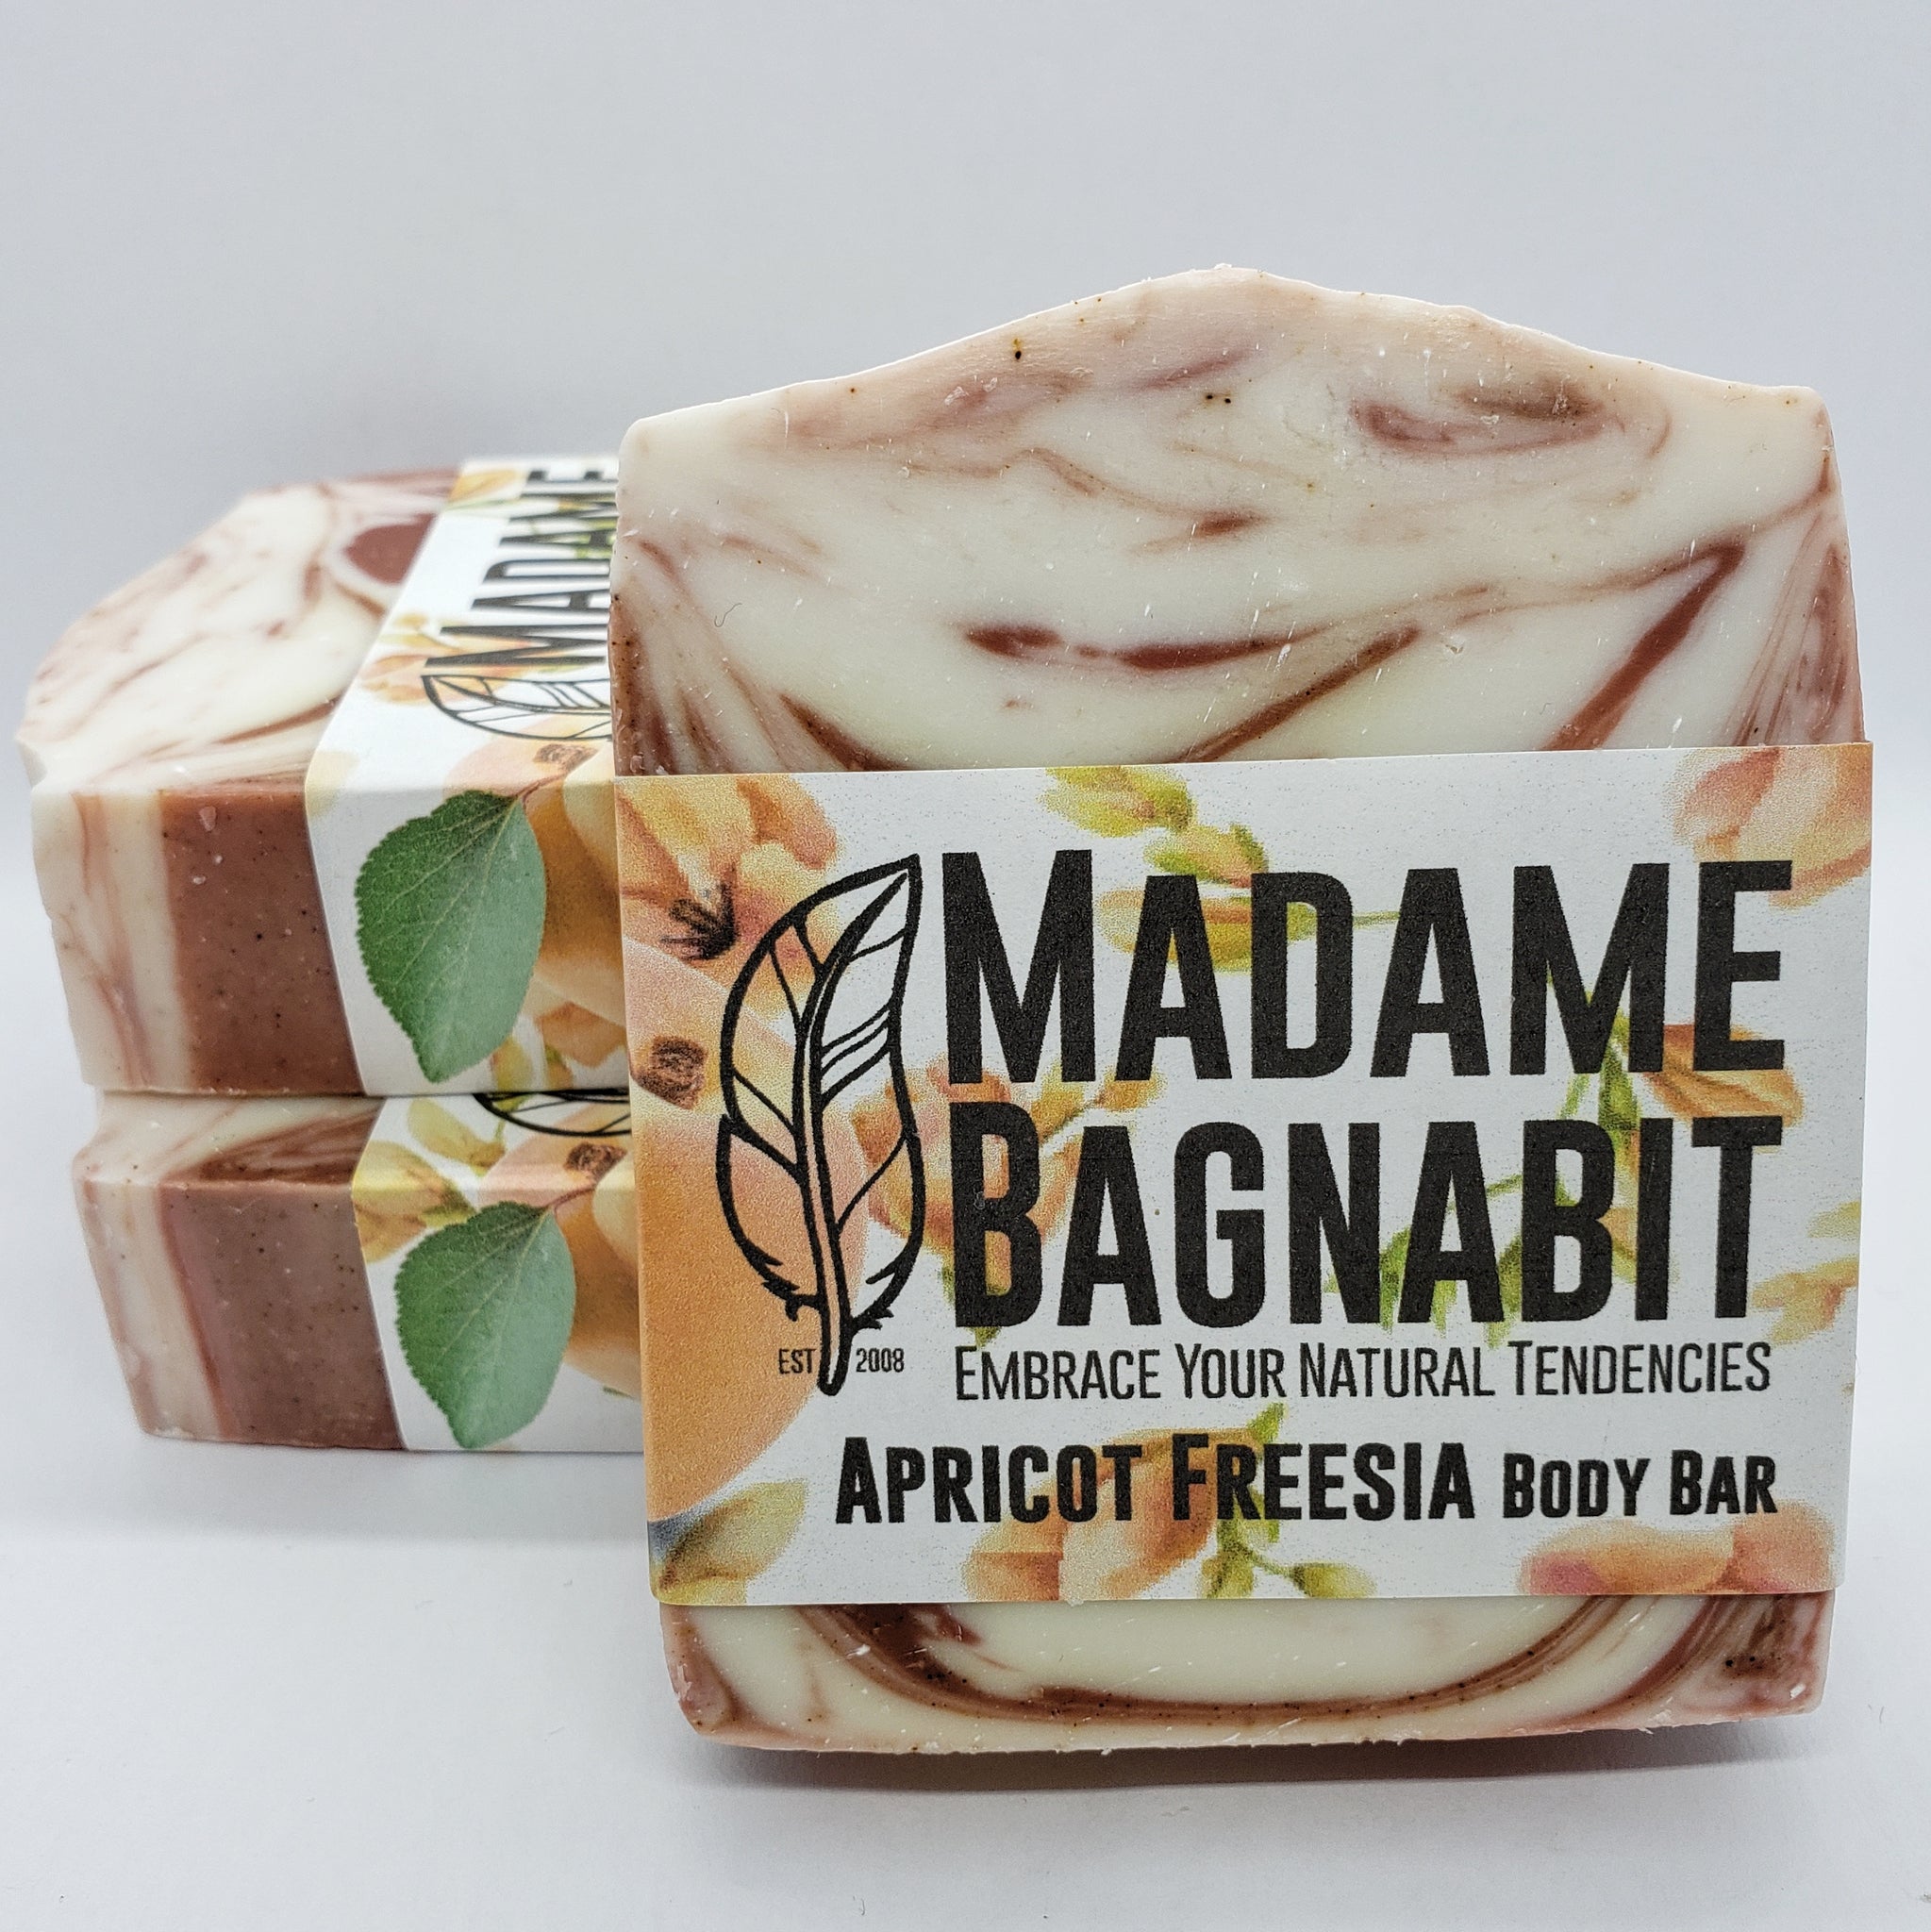 Apricot Freesia soap bar